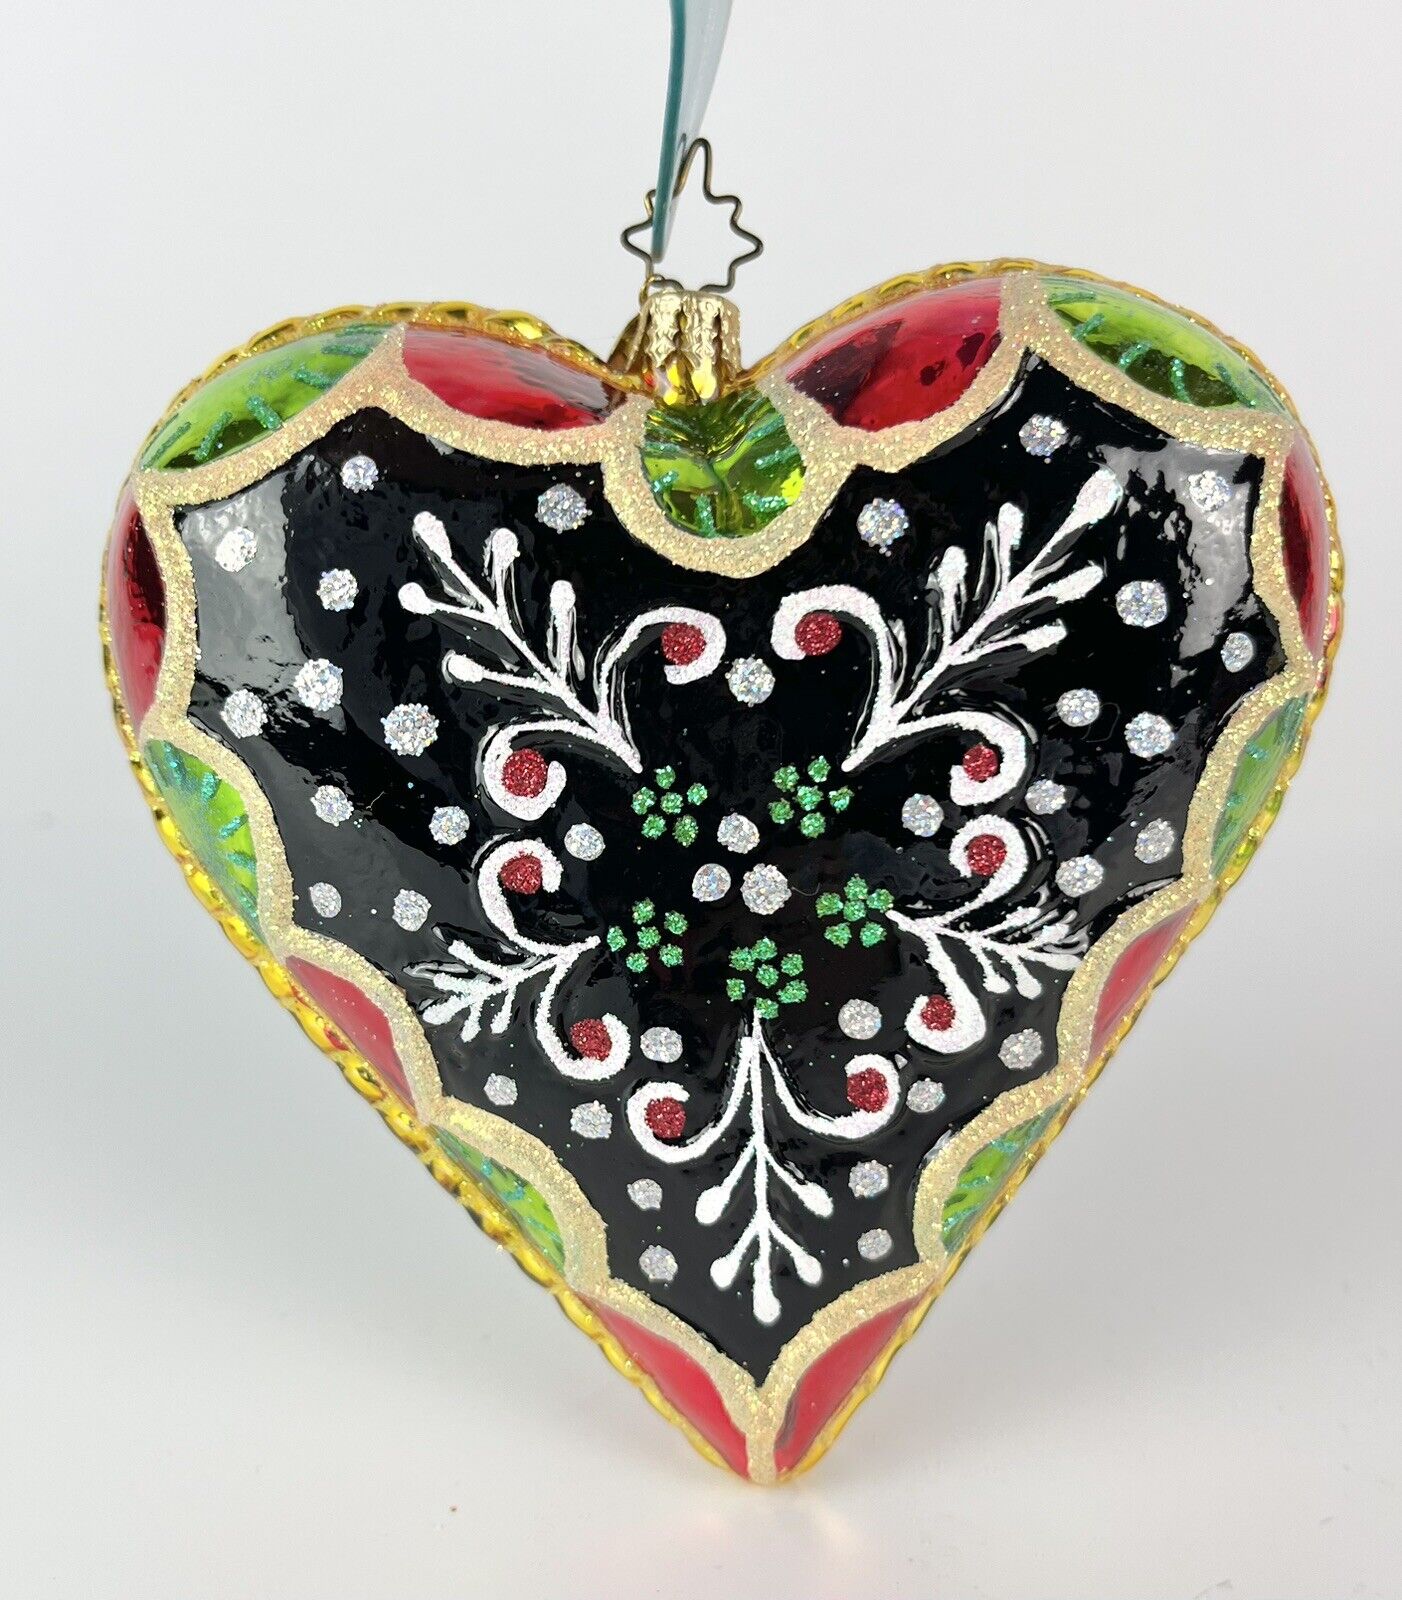 Radko 06 Filigree Heart Retired Glass Christmas Ornament 1012362 Poland NWT